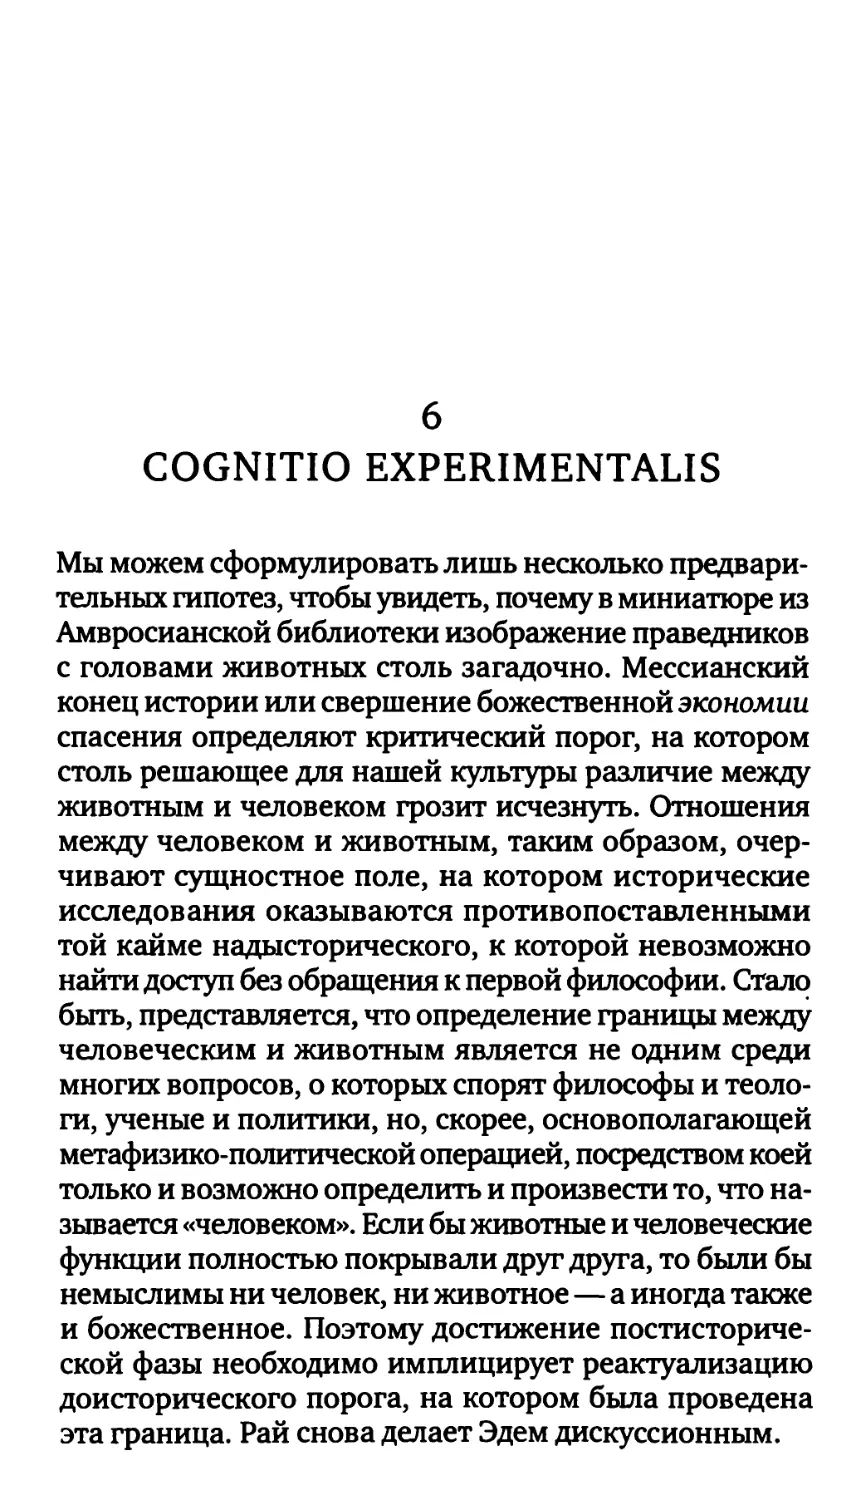 6. Cognitio experimentalis